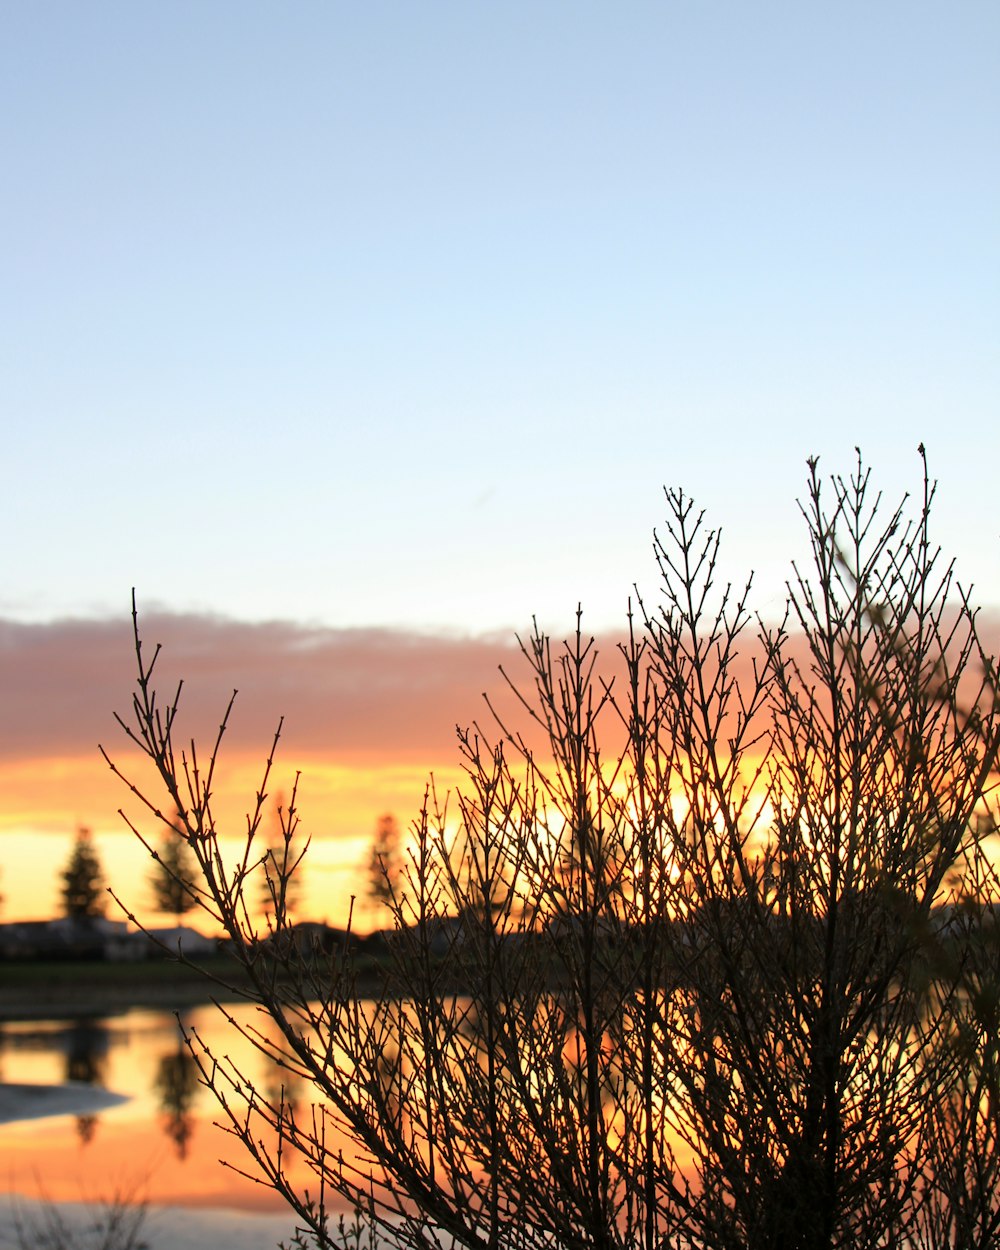 Blattloser Baum in der Nähe von Gewässern während des Sonnenuntergangs